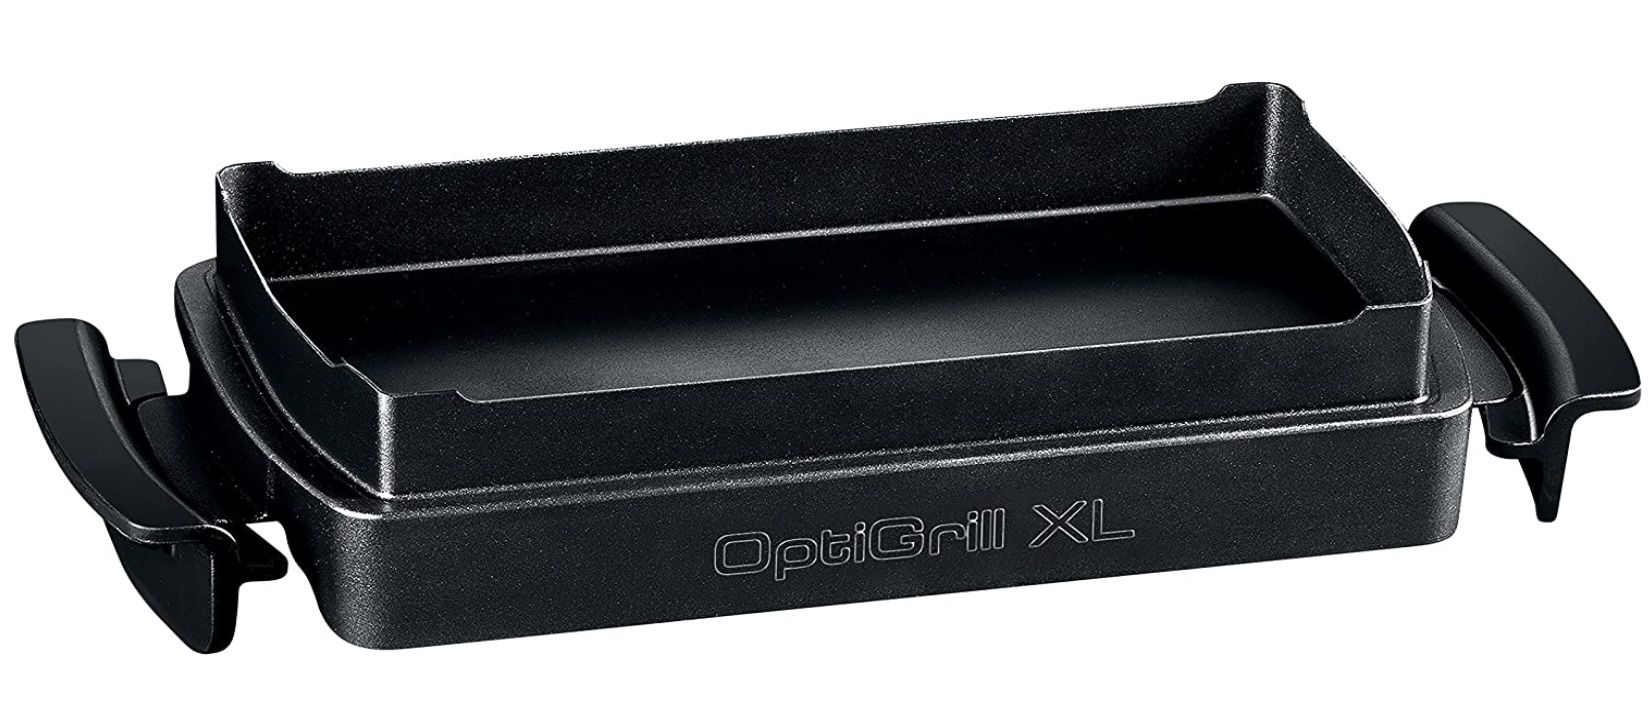 Tefal XA7278 OptiGrill+ XL Backschale mit 2 Liter Fassungsvermögen für 66€ (statt 85€)